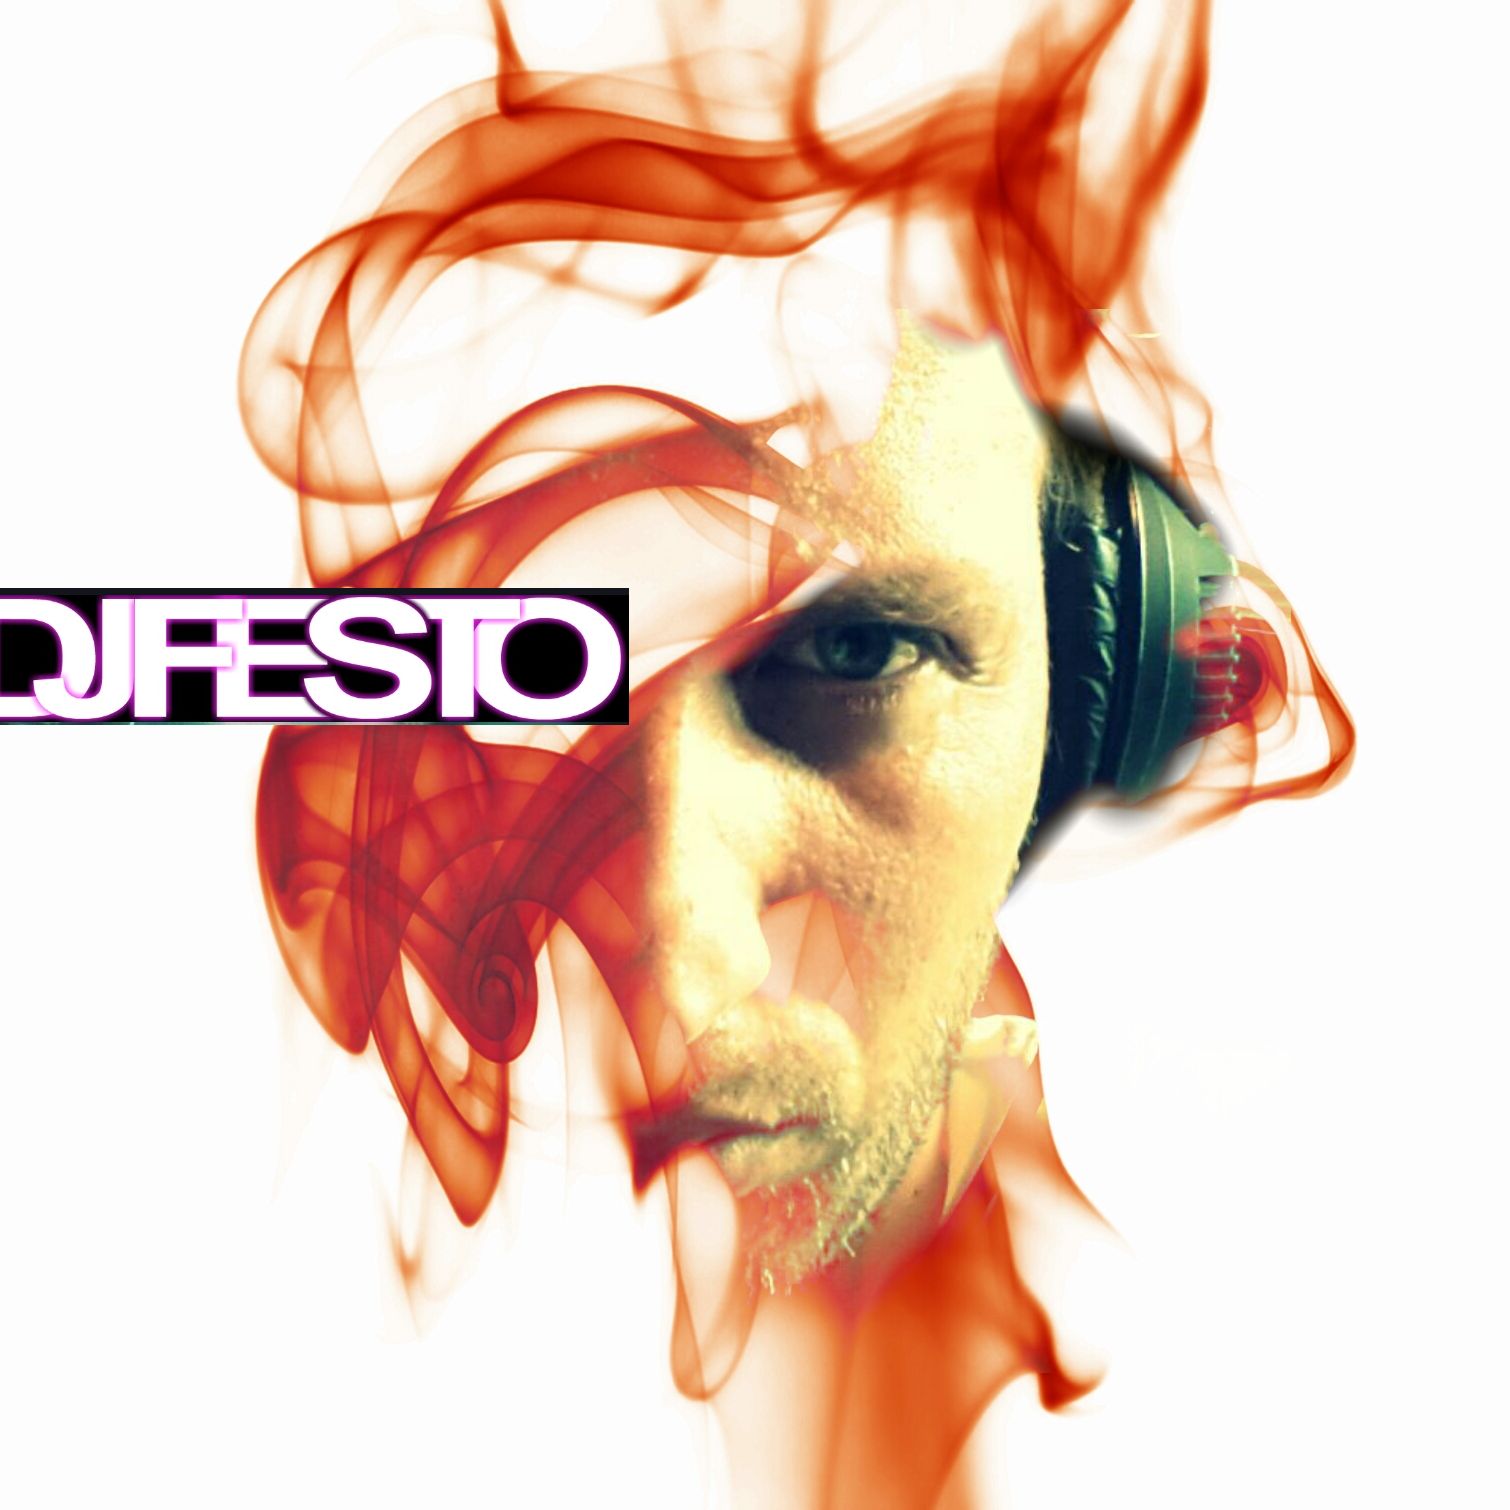 djfesto (Soundcloud):djfesto (Soundcloud)